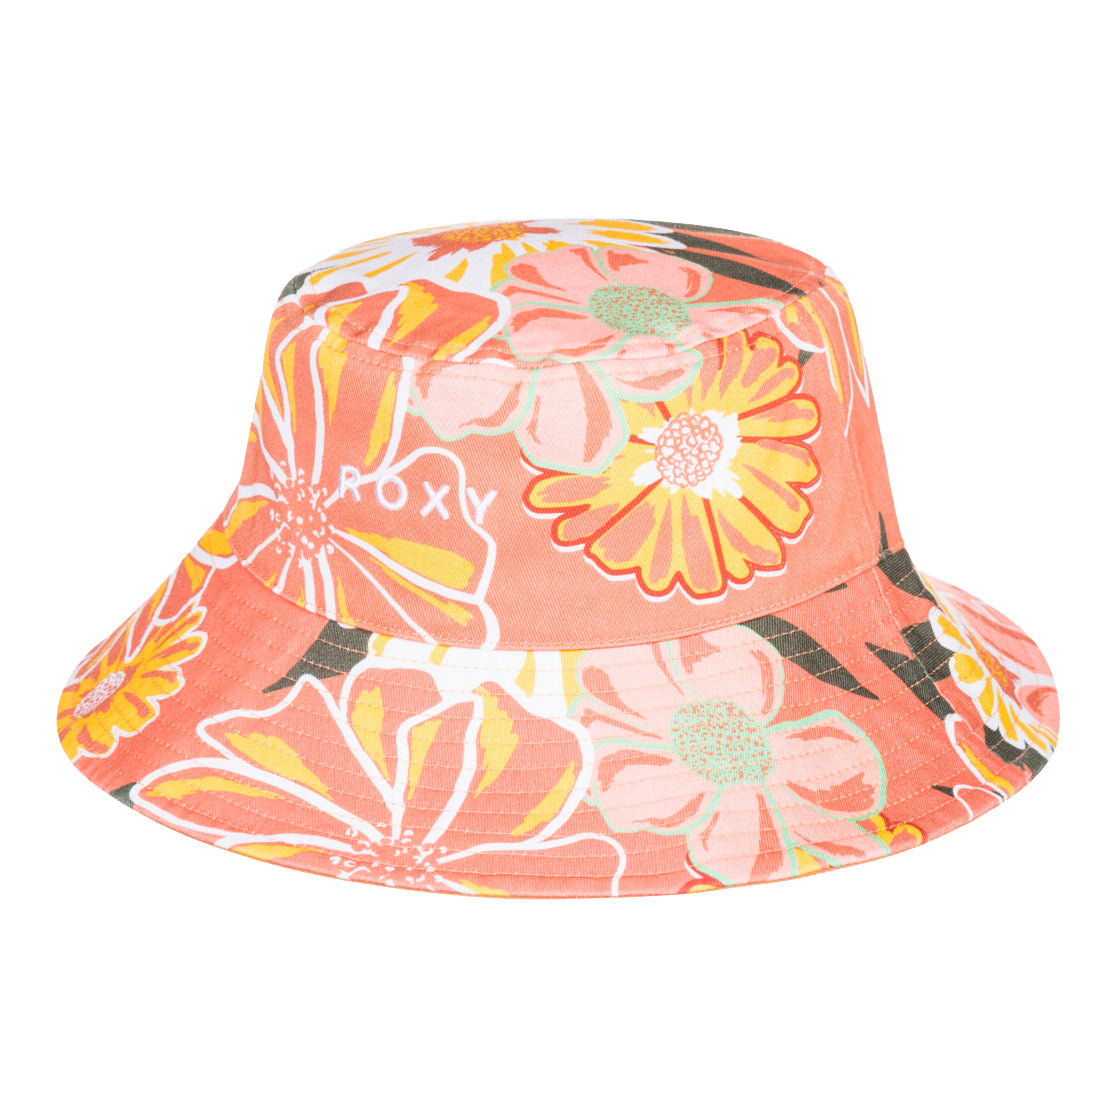 Roxy Aloha Sunshine Printed Bucket Hat  CKN8-ToastedNut S/M